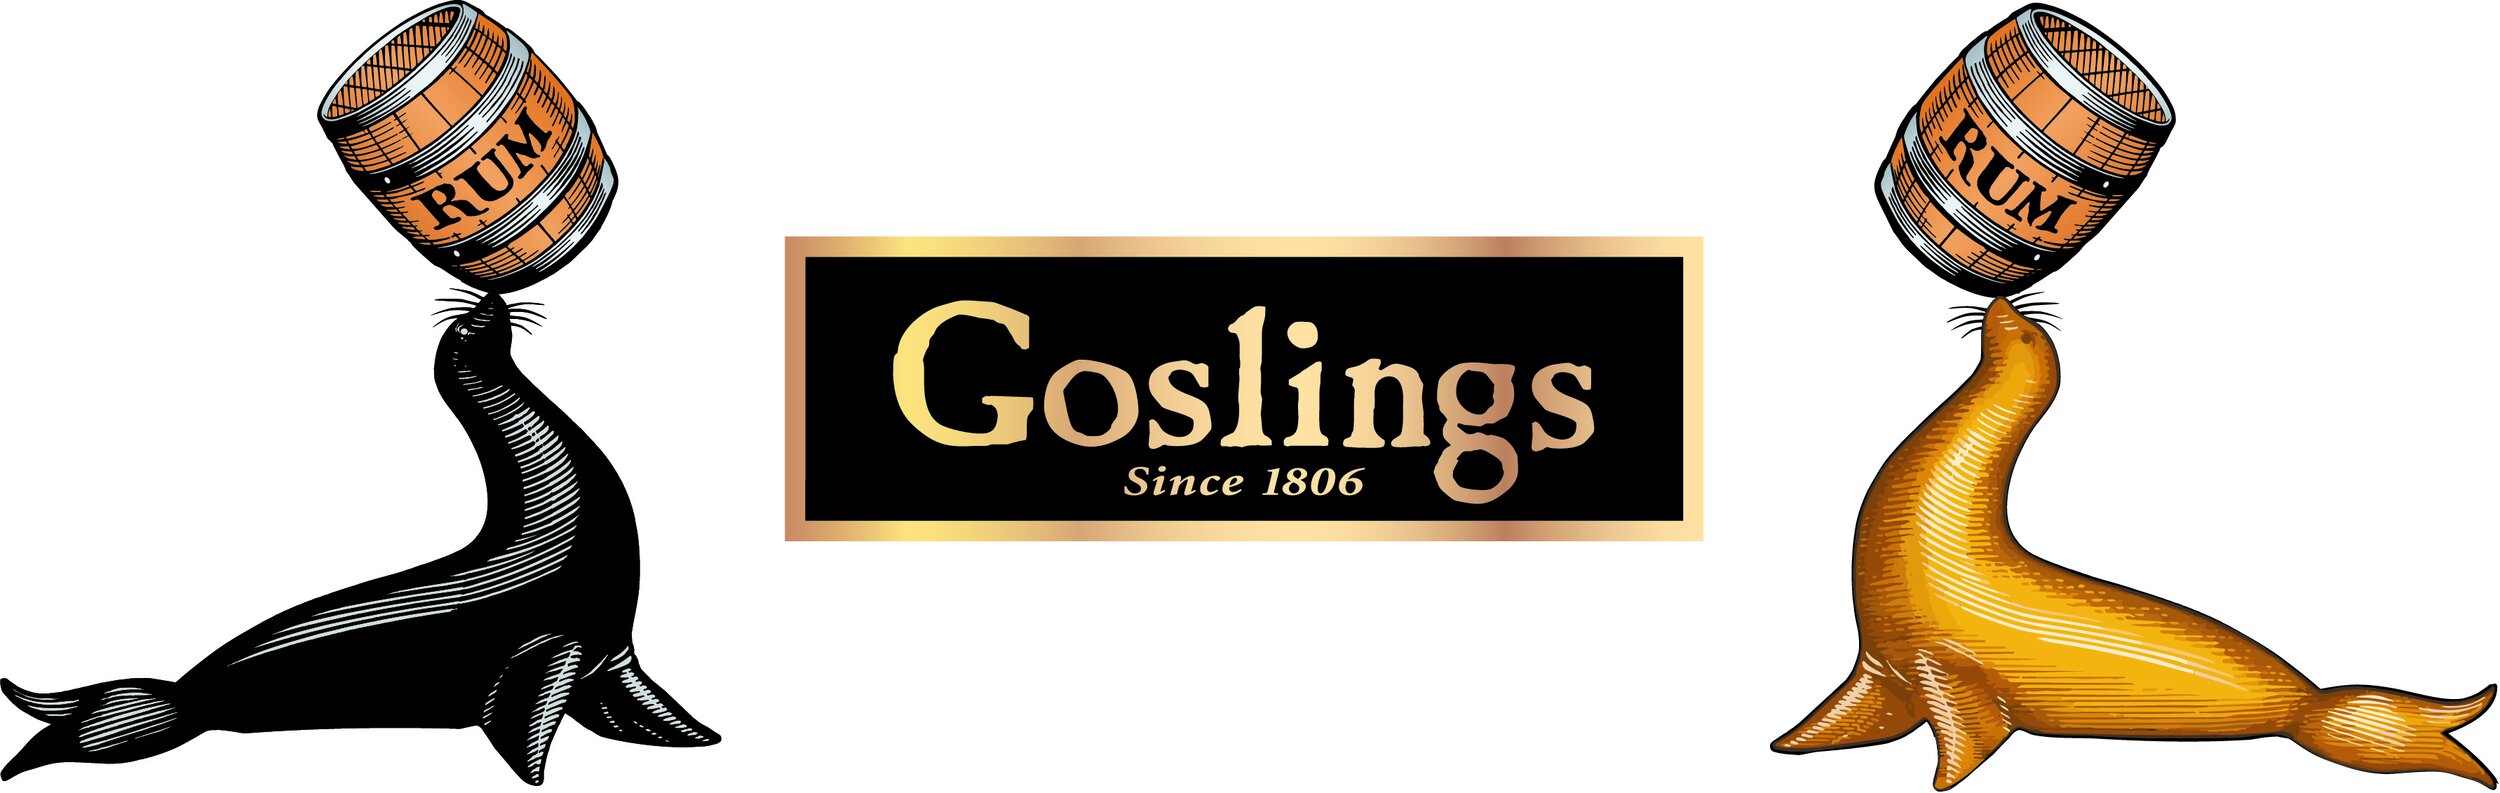 Goslings_BS-boxedLogo_GS_4C_2015.jpg